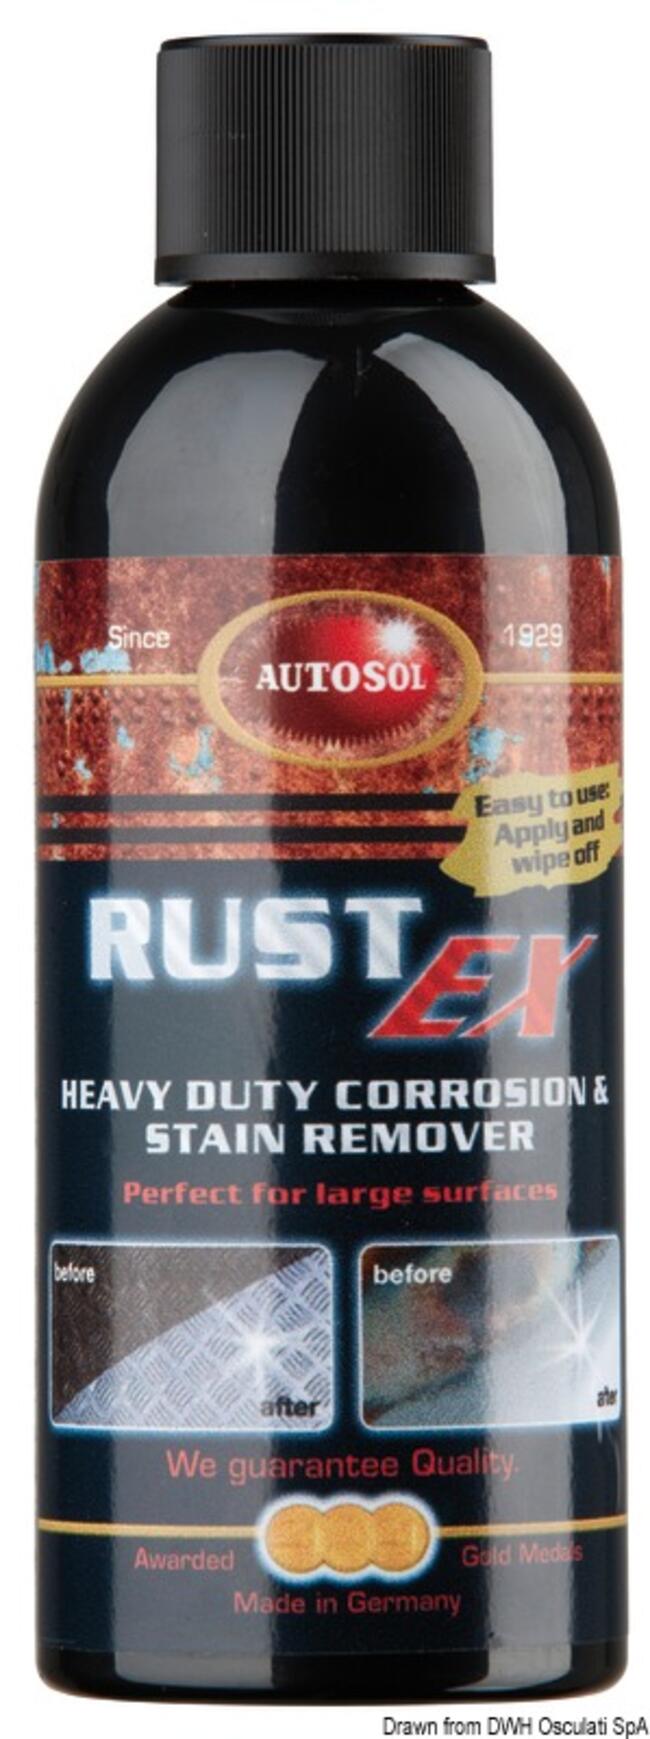 Autosol Rust-ex